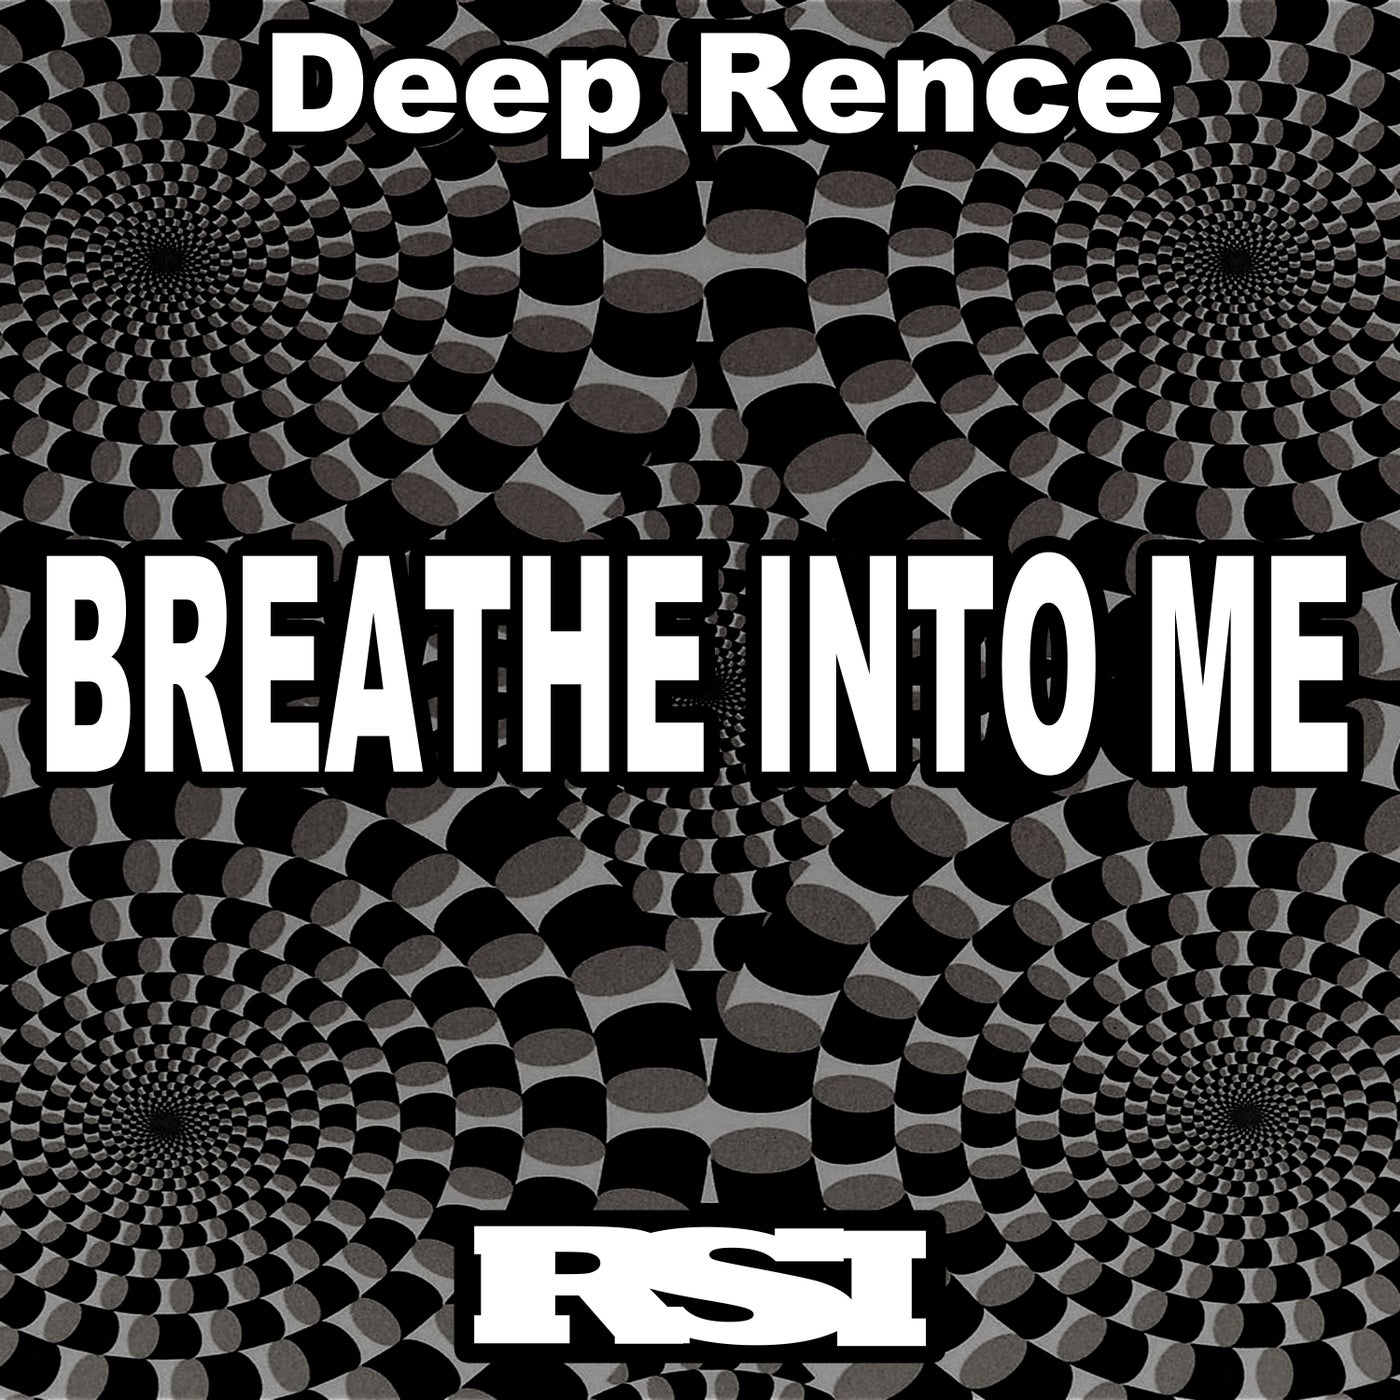 Cover - Deep Rence - Breathe into Me (Original Vocal Mix)